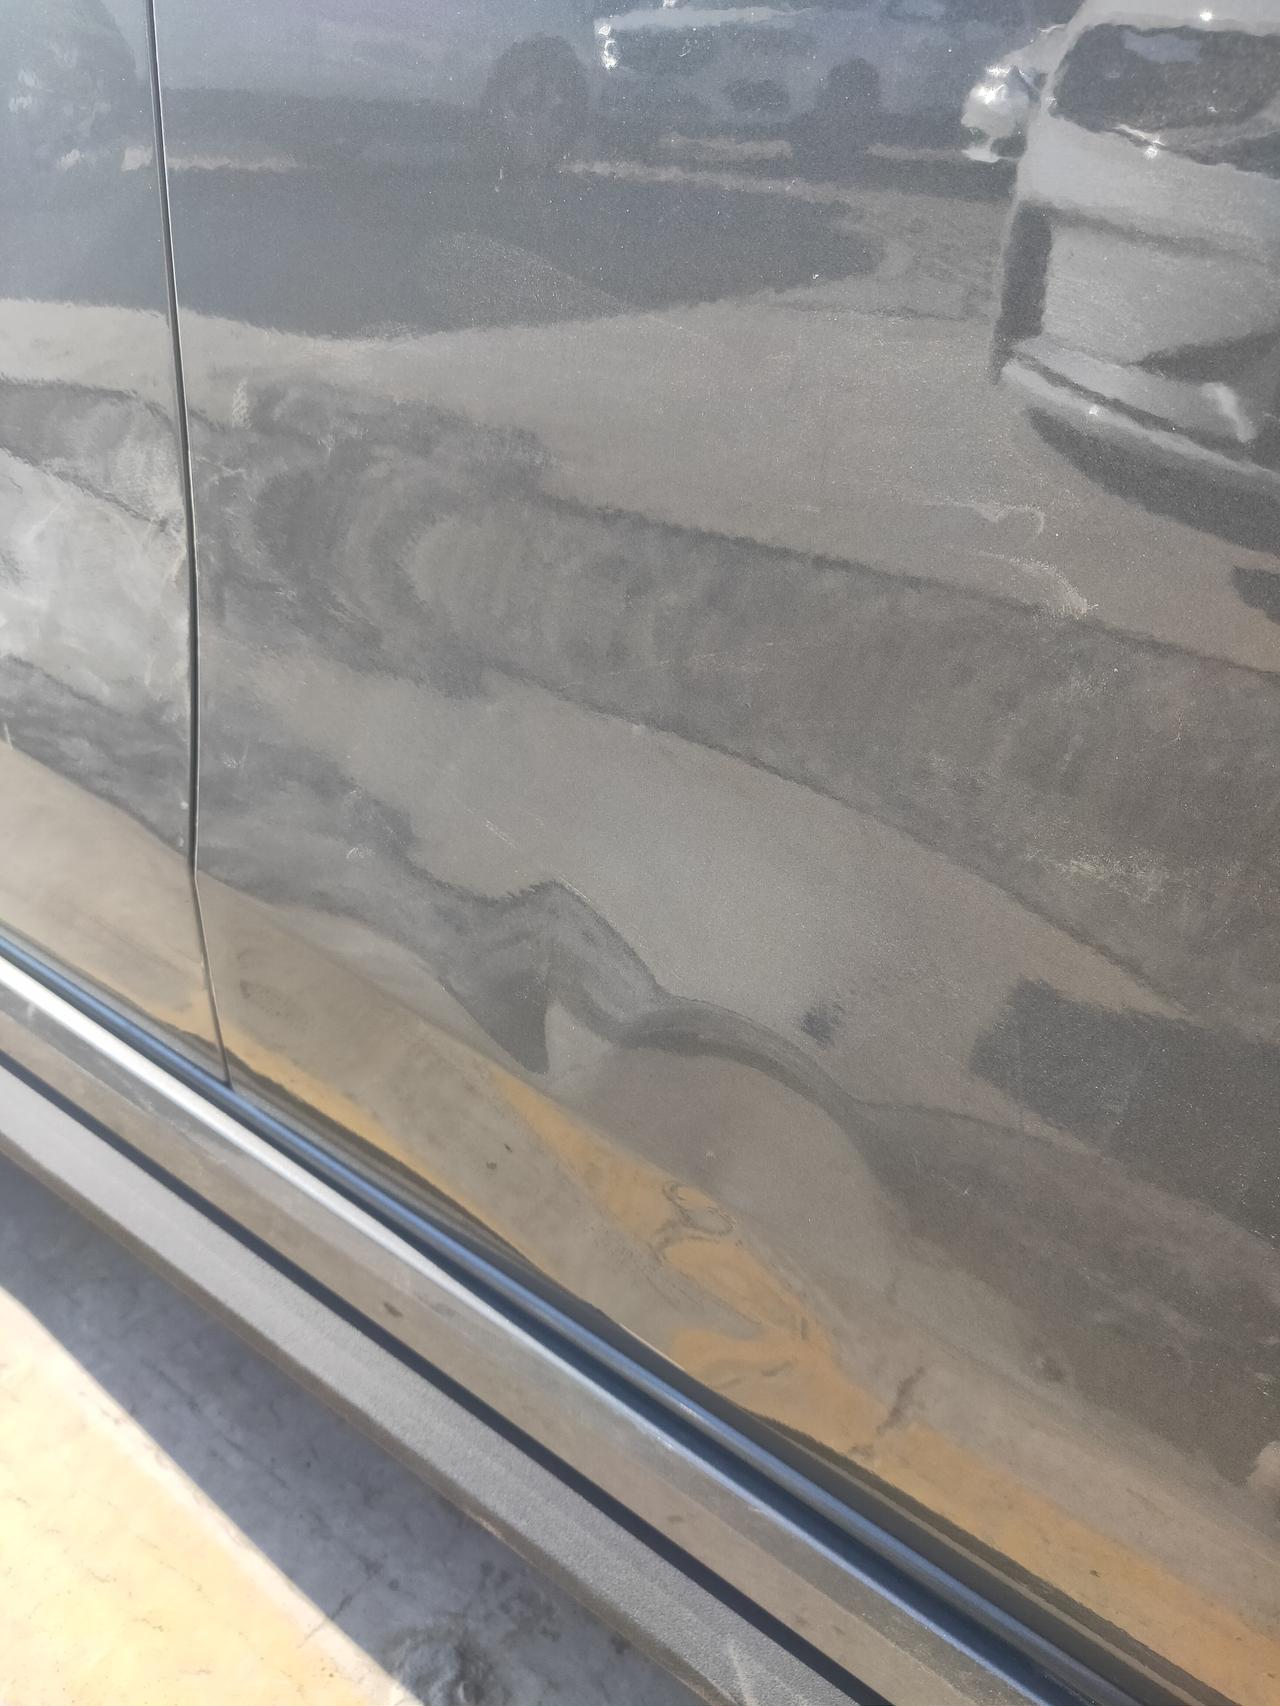 领克03 新车刚提半个月停车不小心刮了，有两个坑和一条细裂漆，该如何处理好？